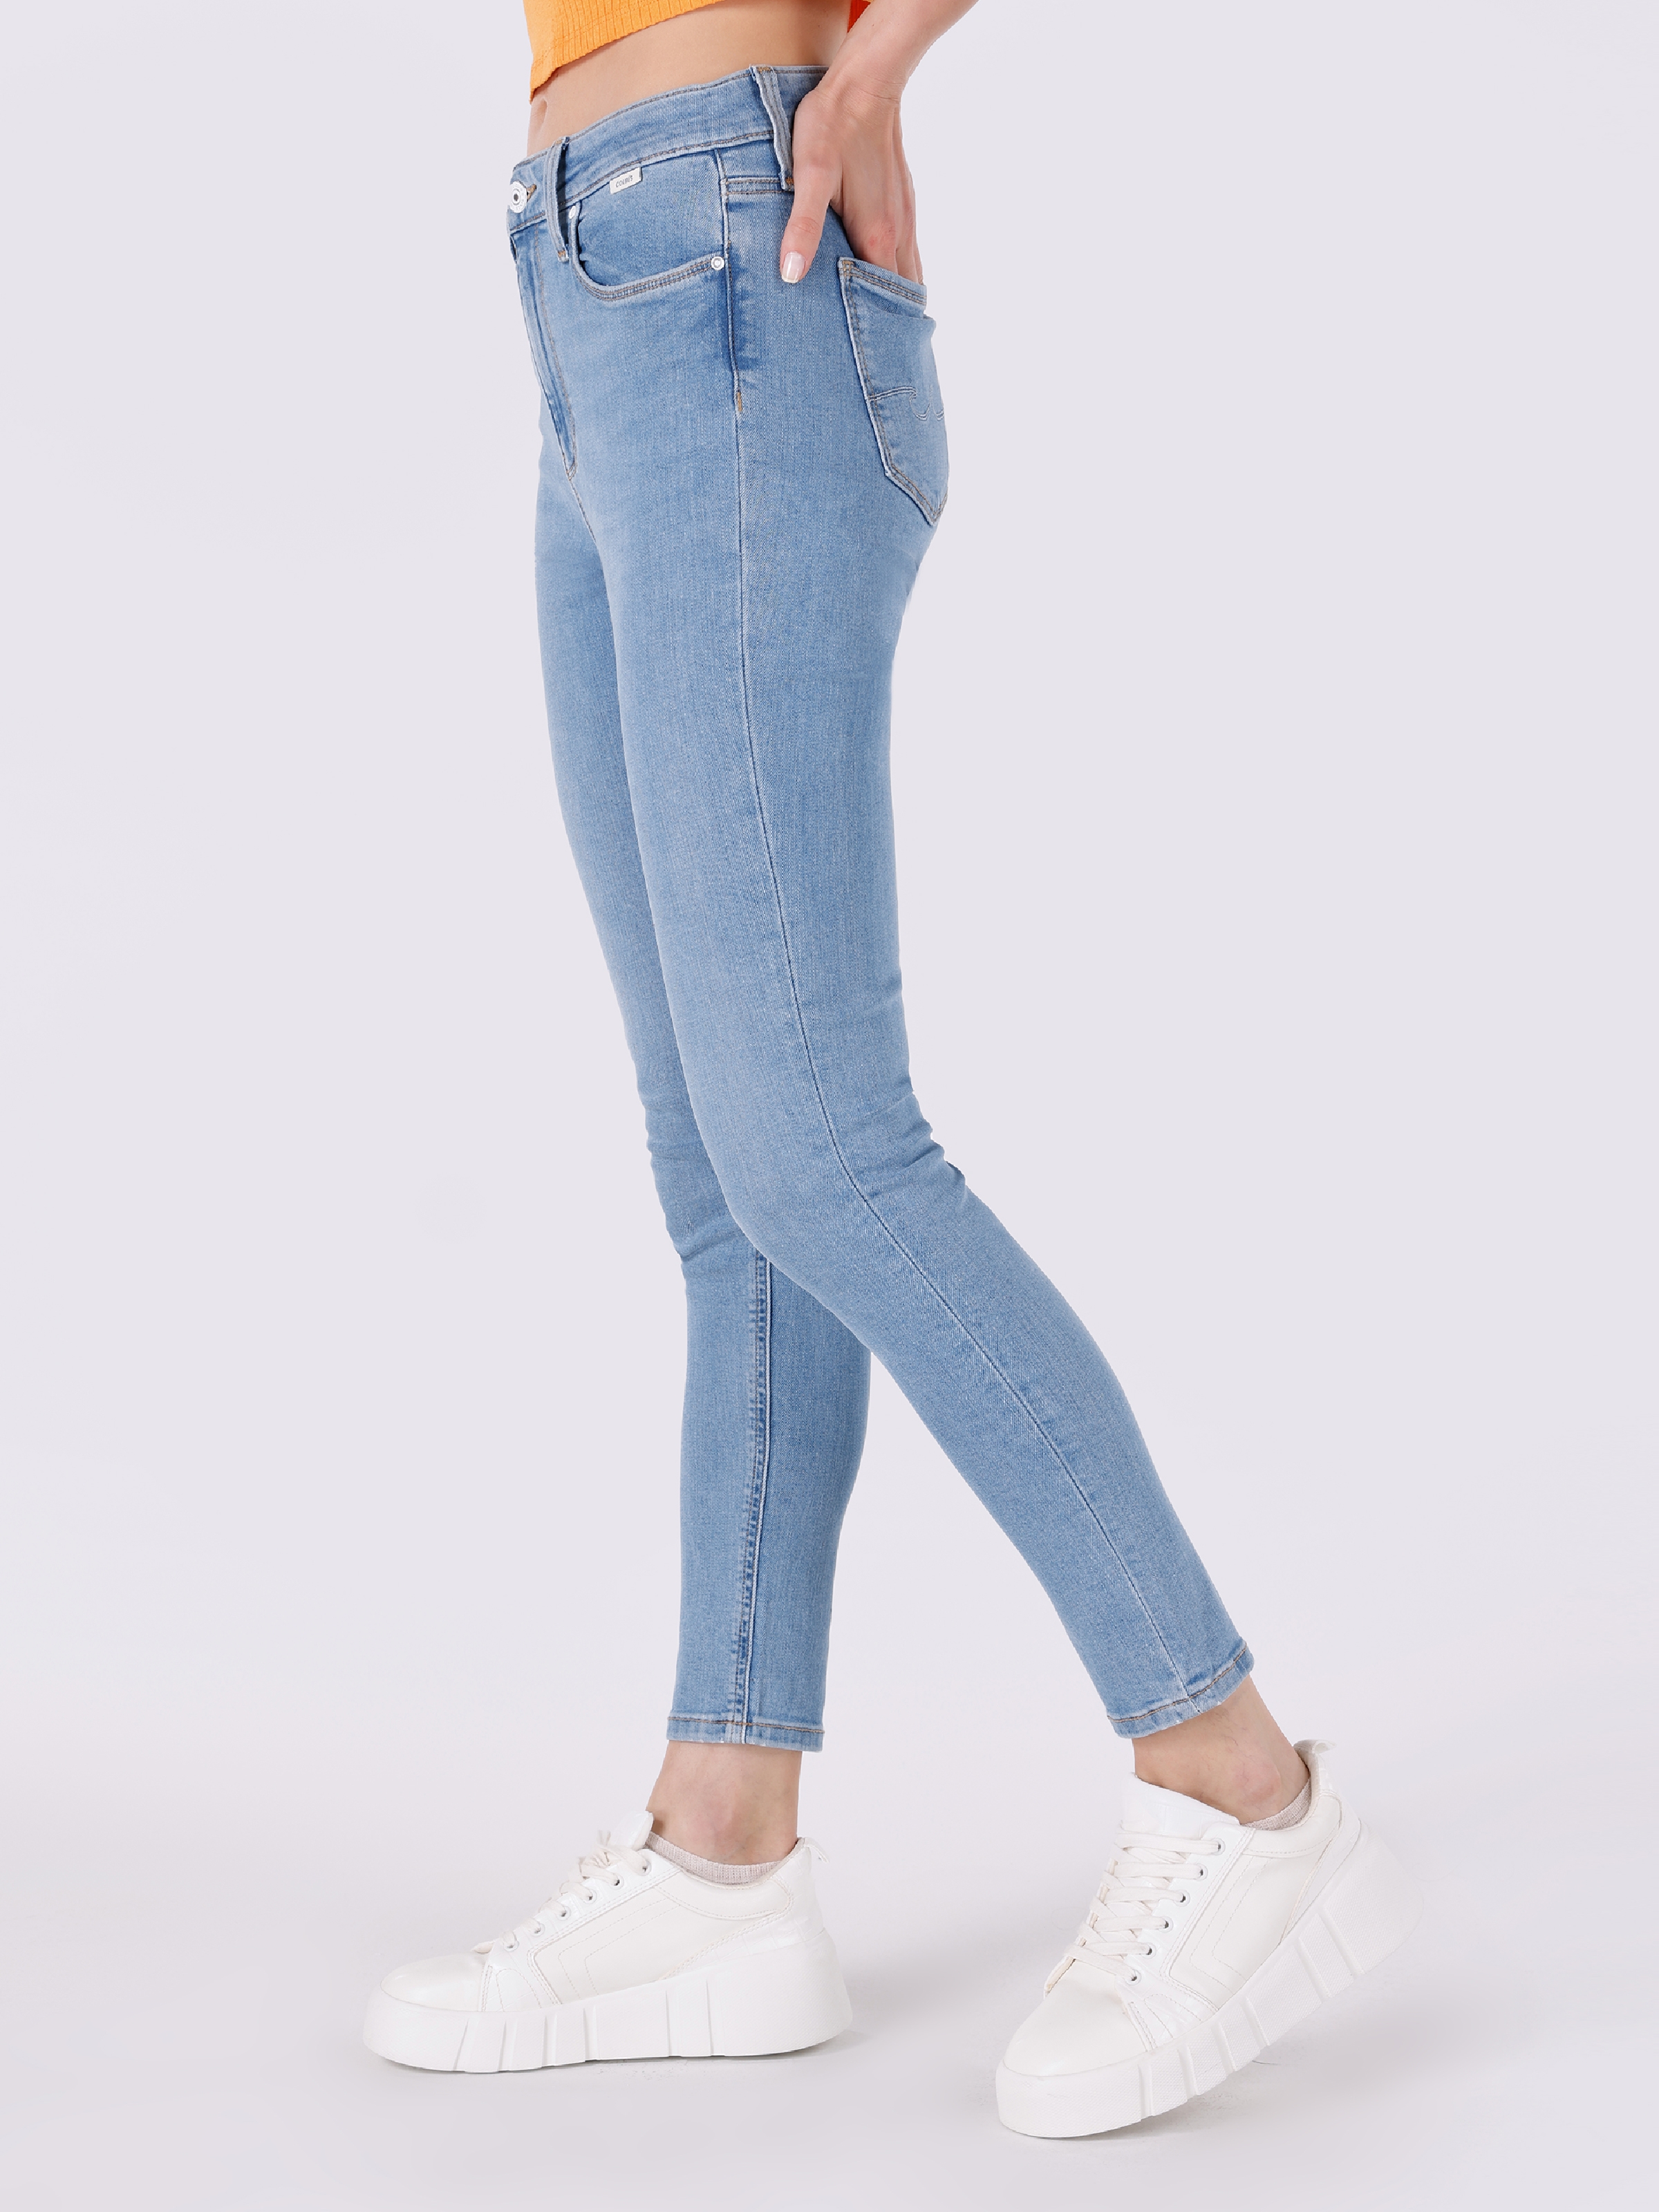 Afficher les détails de 759 Lara Super Slim Fit Taille Normale Jambe Étroite Pantalon Jean Bleu Femme